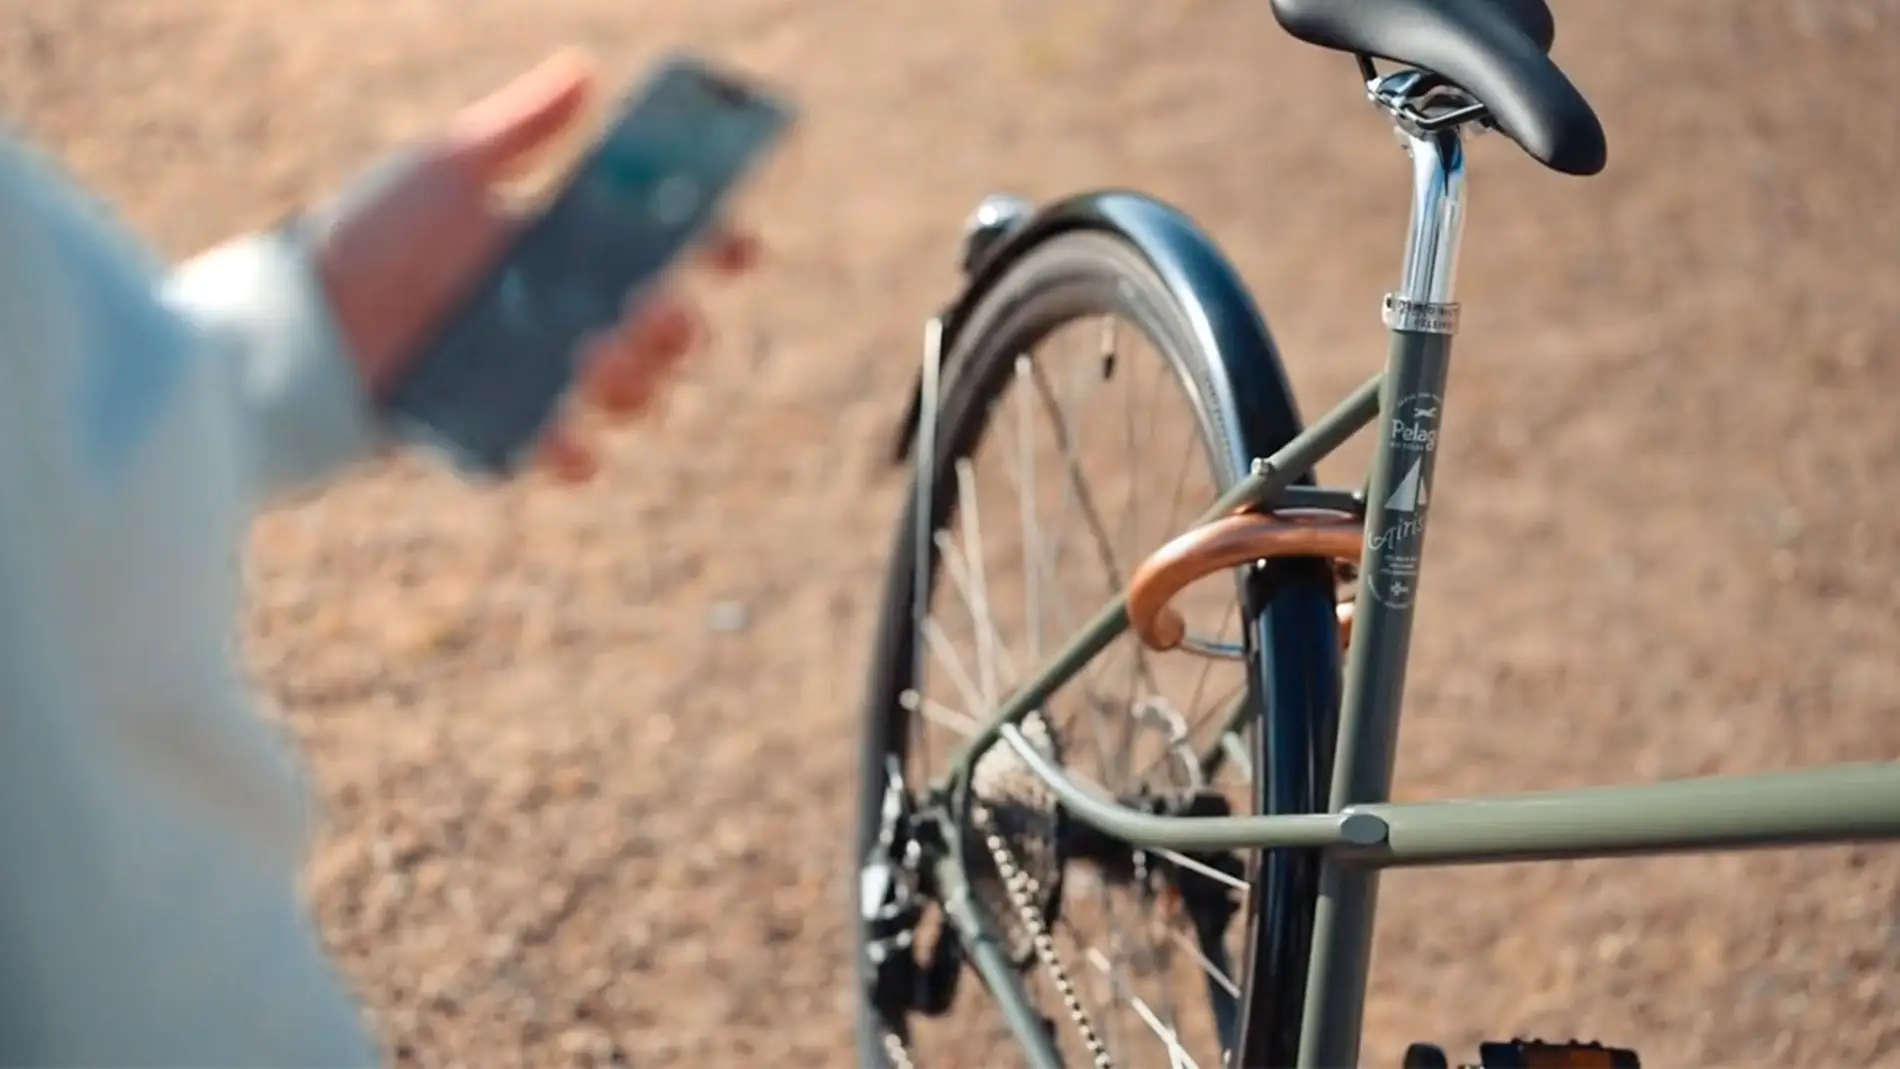 Este candado antirrobo para tu bici se controla desde el smartphone